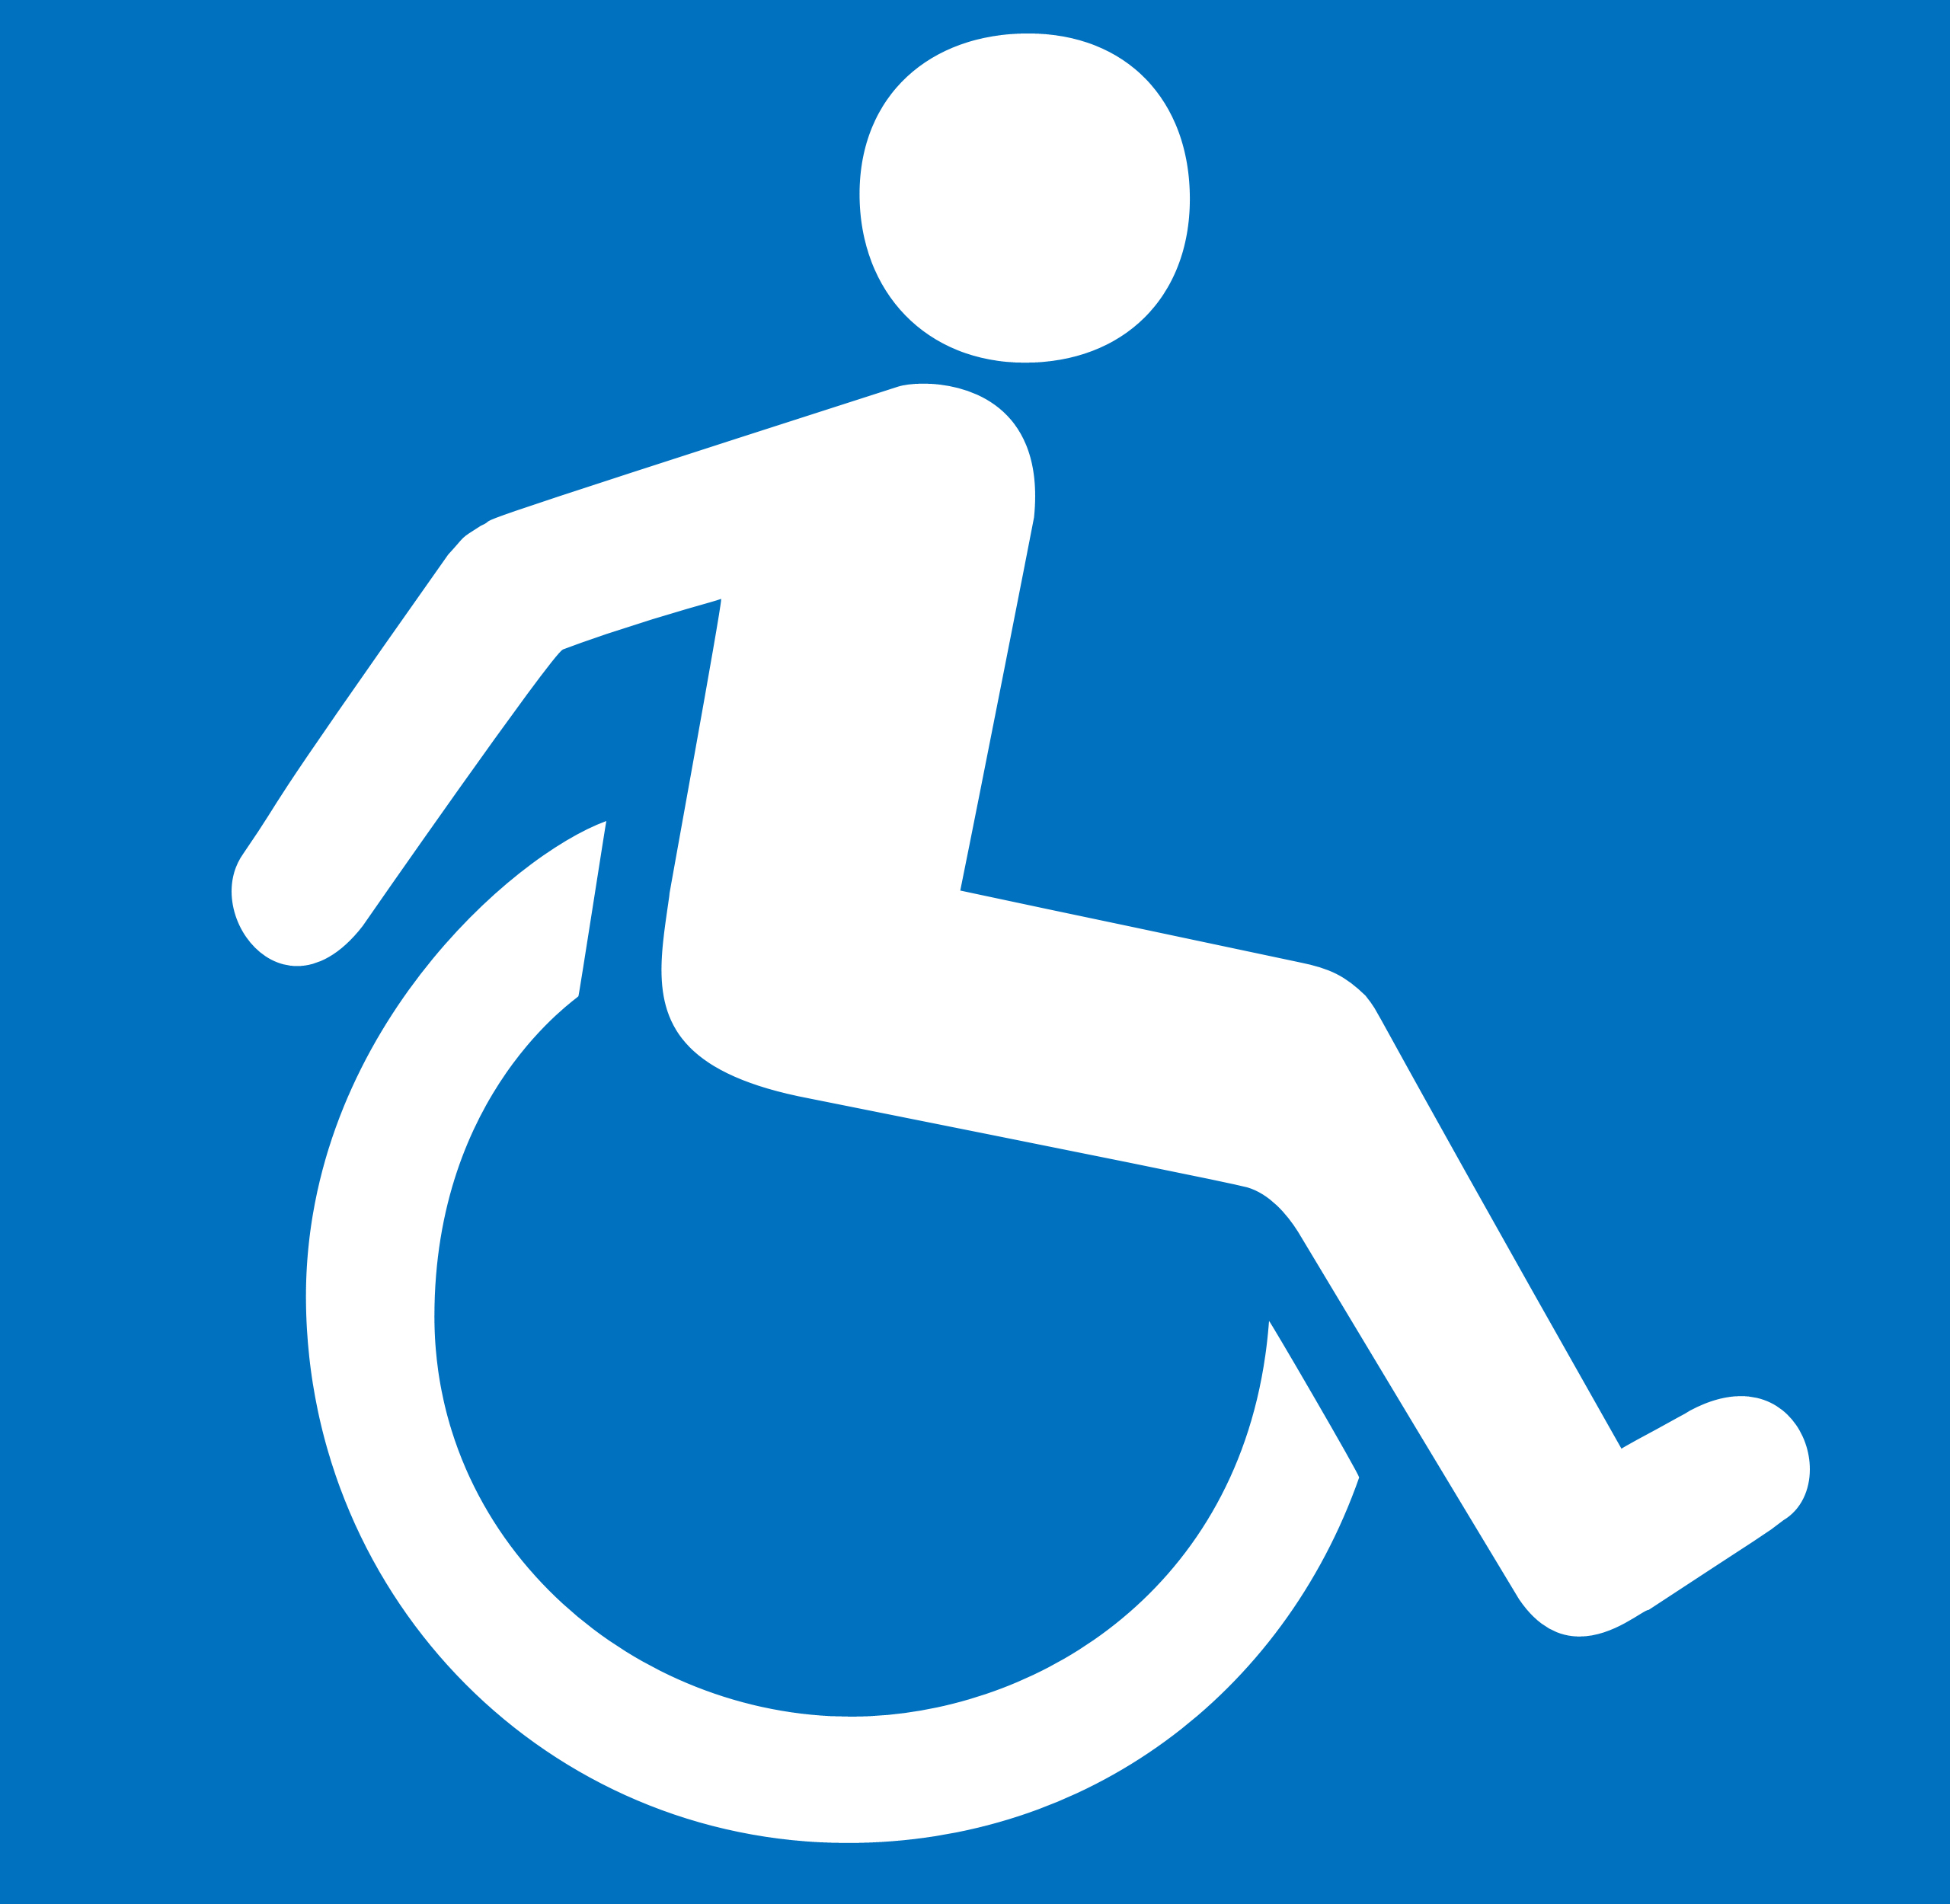 Знак инвалидной коляски. Логотип инвалидов. Люди с ограниченными возможностями знак. Символ людей с ограниченными возможностями. Пиктограмма инвалид.